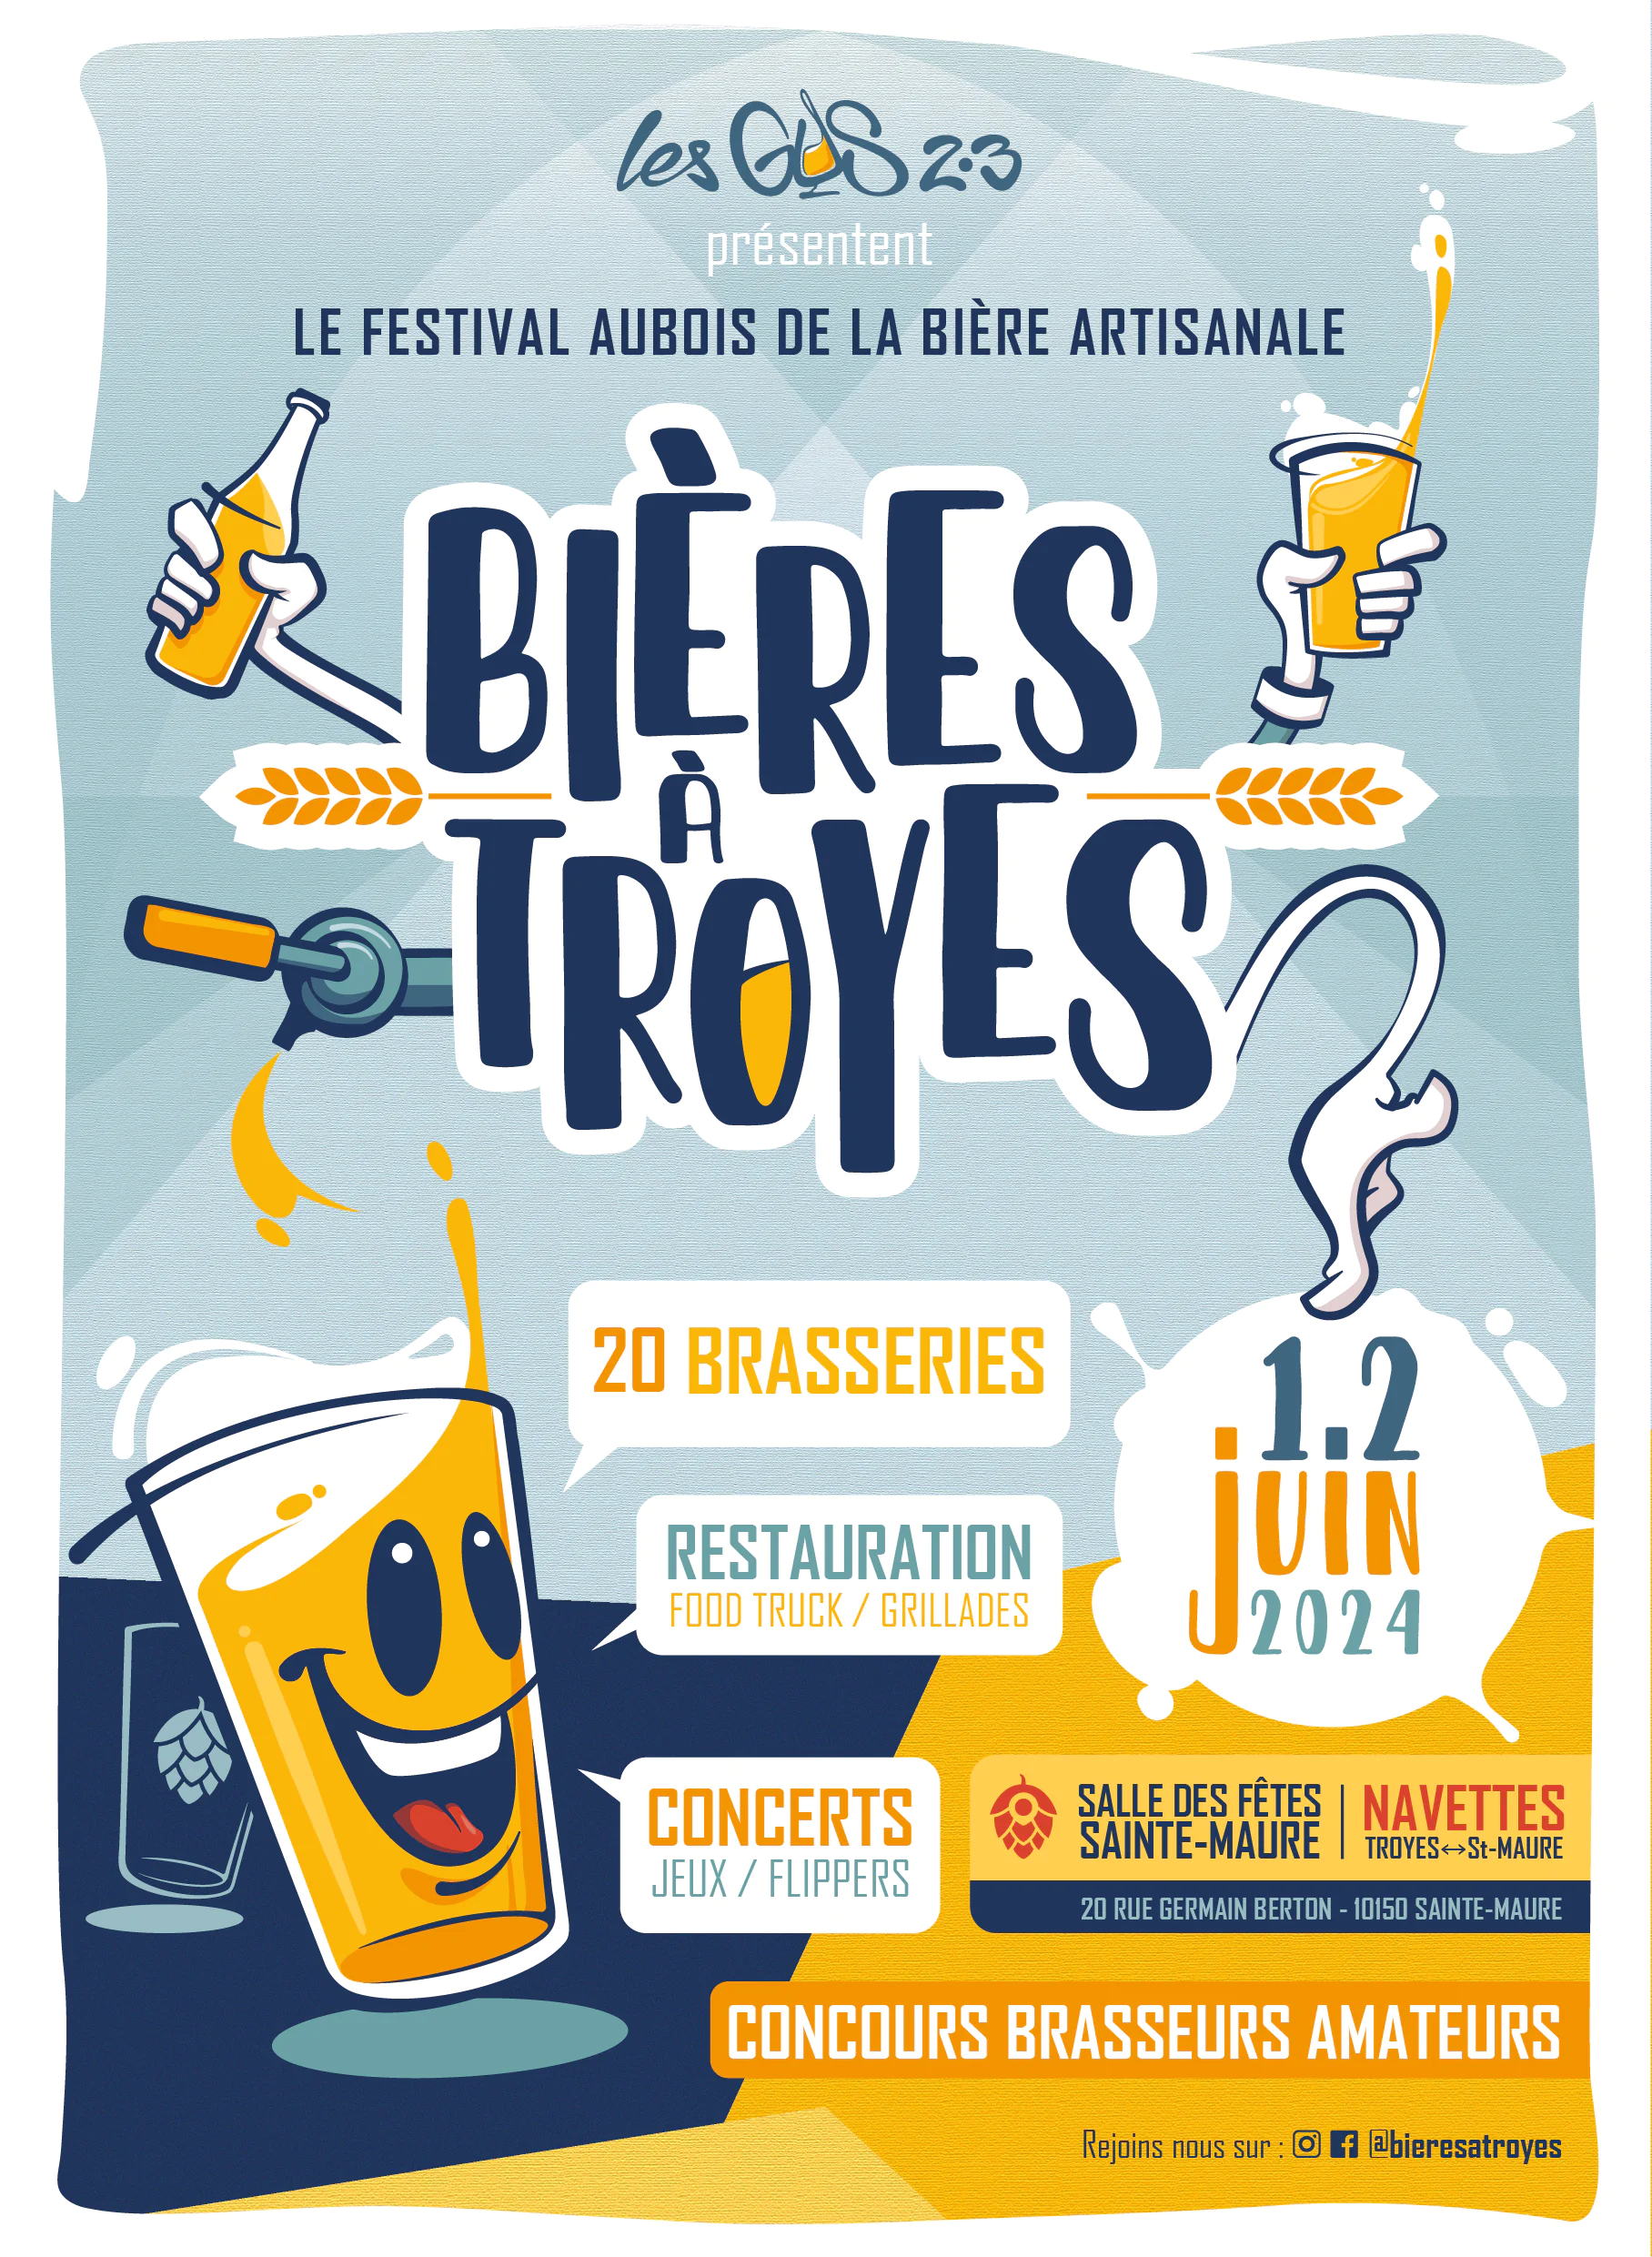 "Bières à Troyes" Festival aubois de la bière artisanale